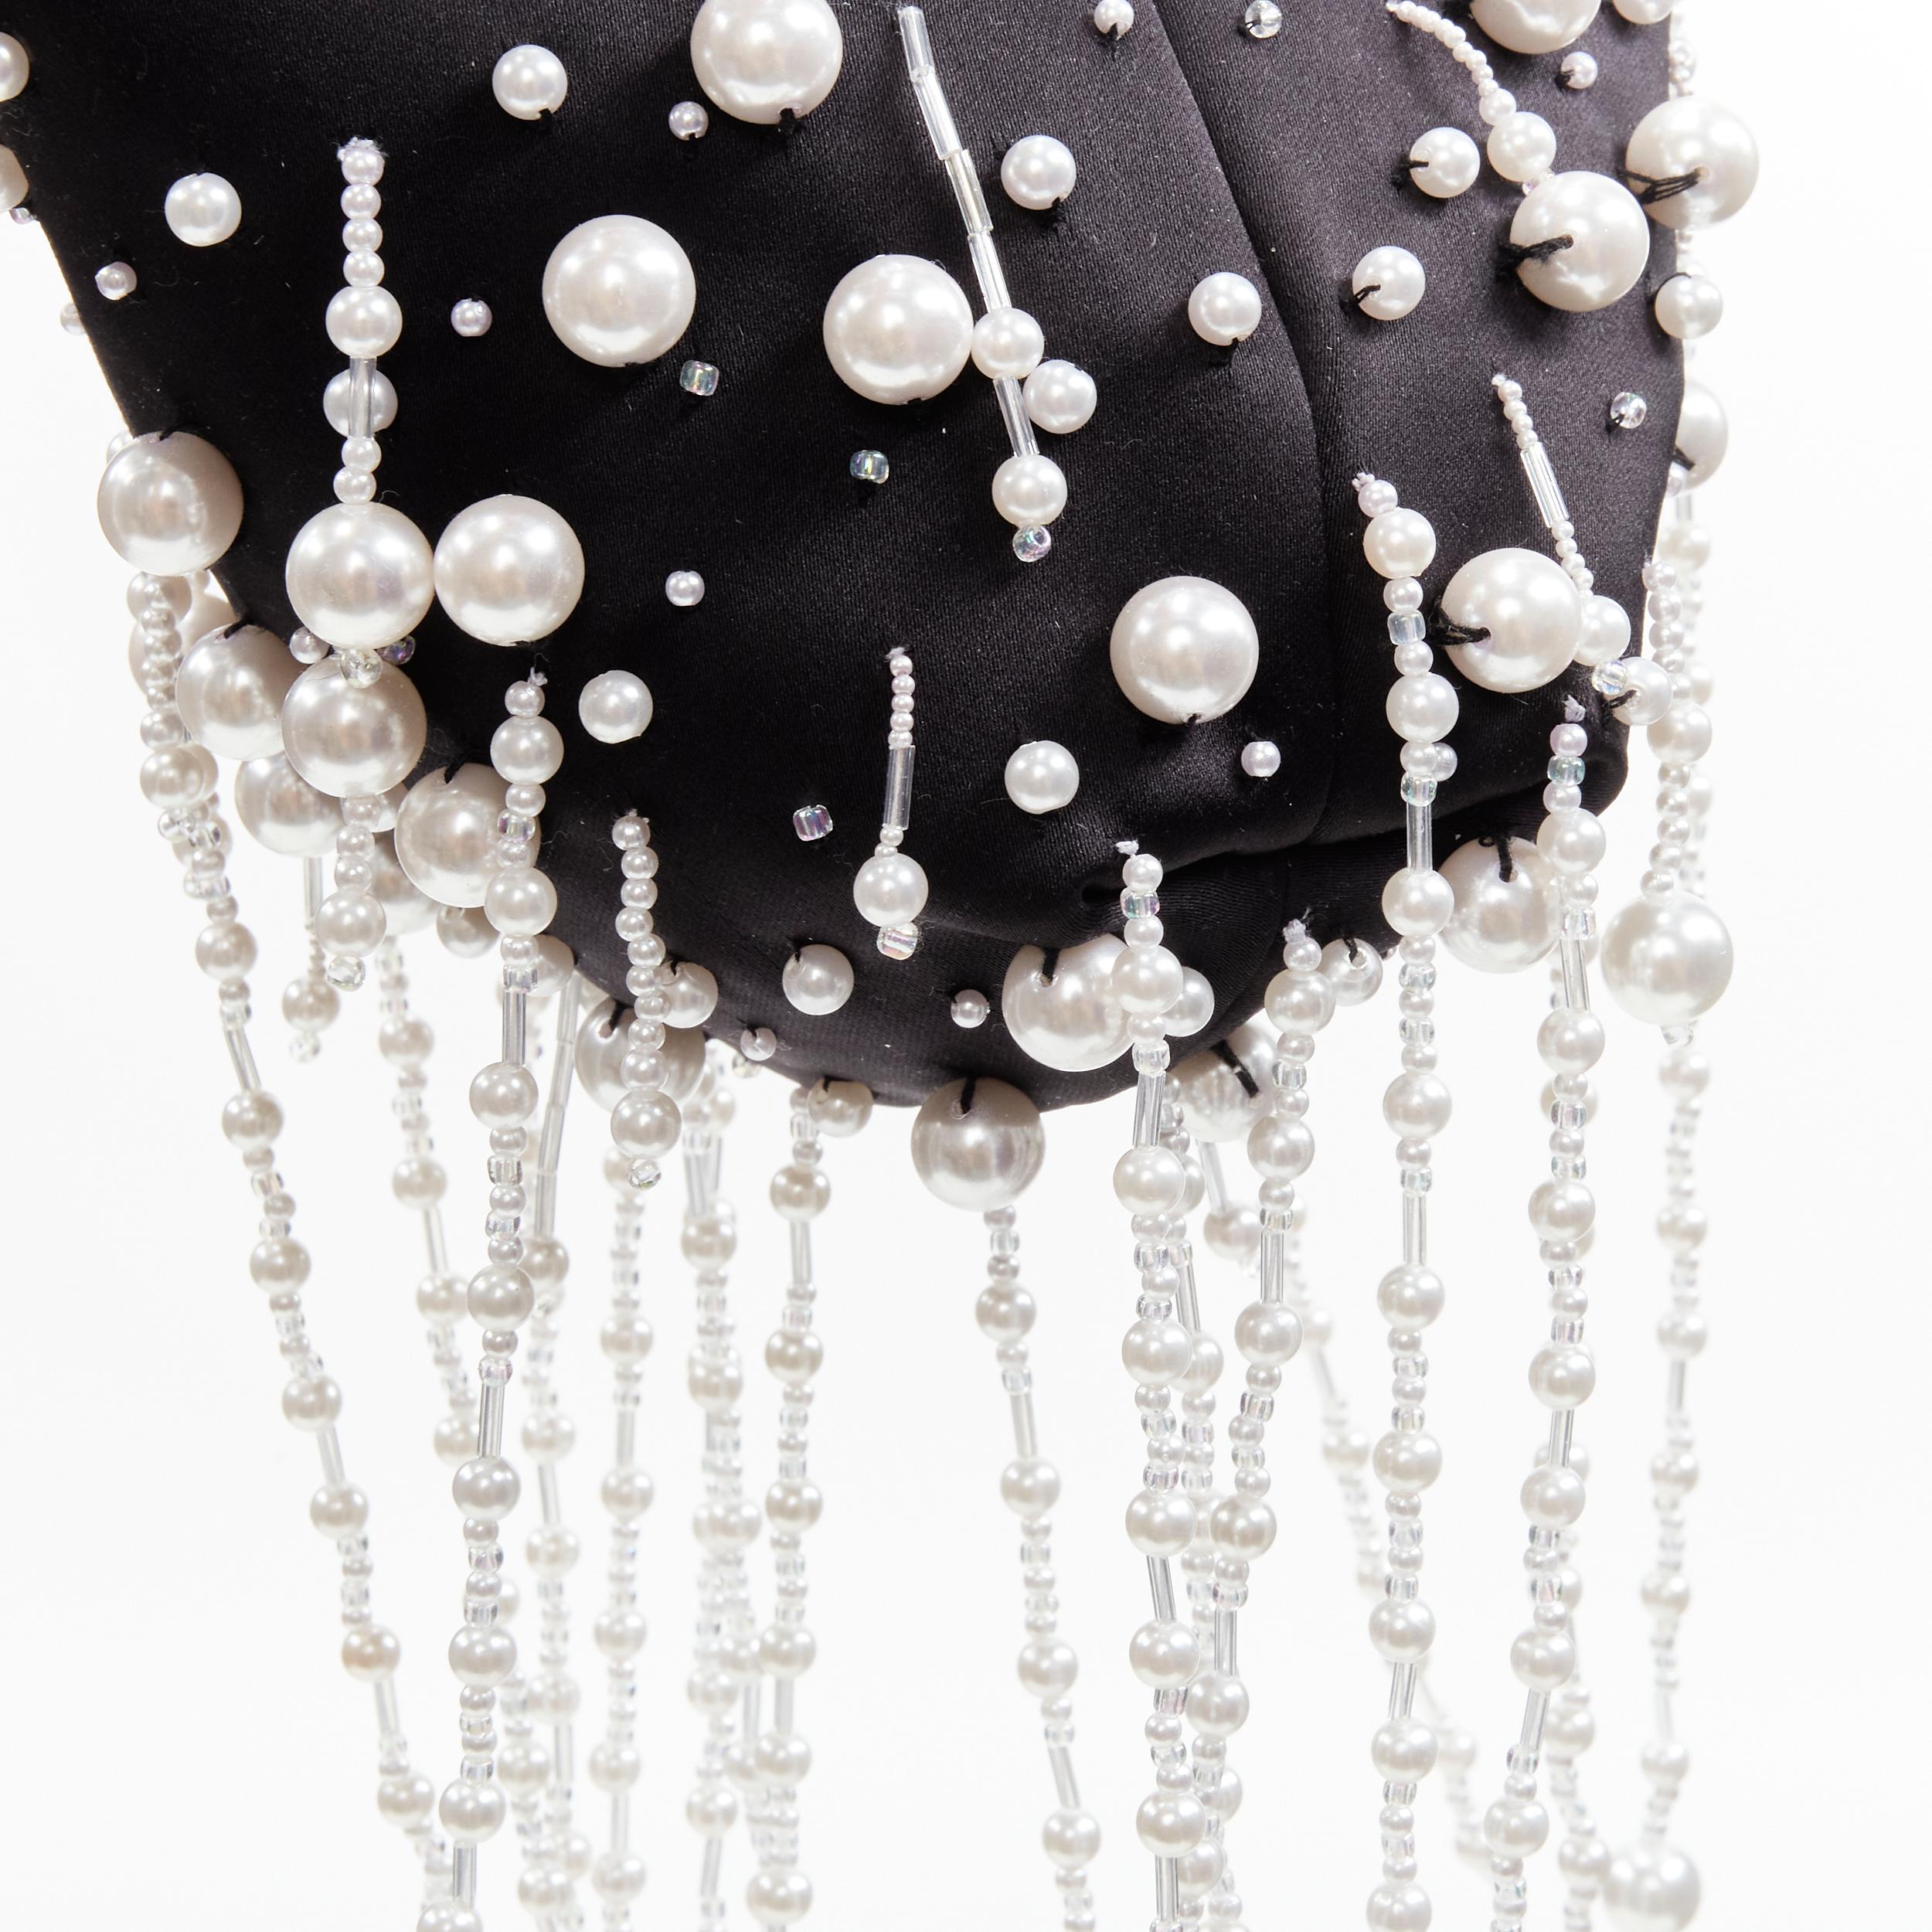 new CHRISTOPHER KANE Runway pearl embellished black satin evening bag 5